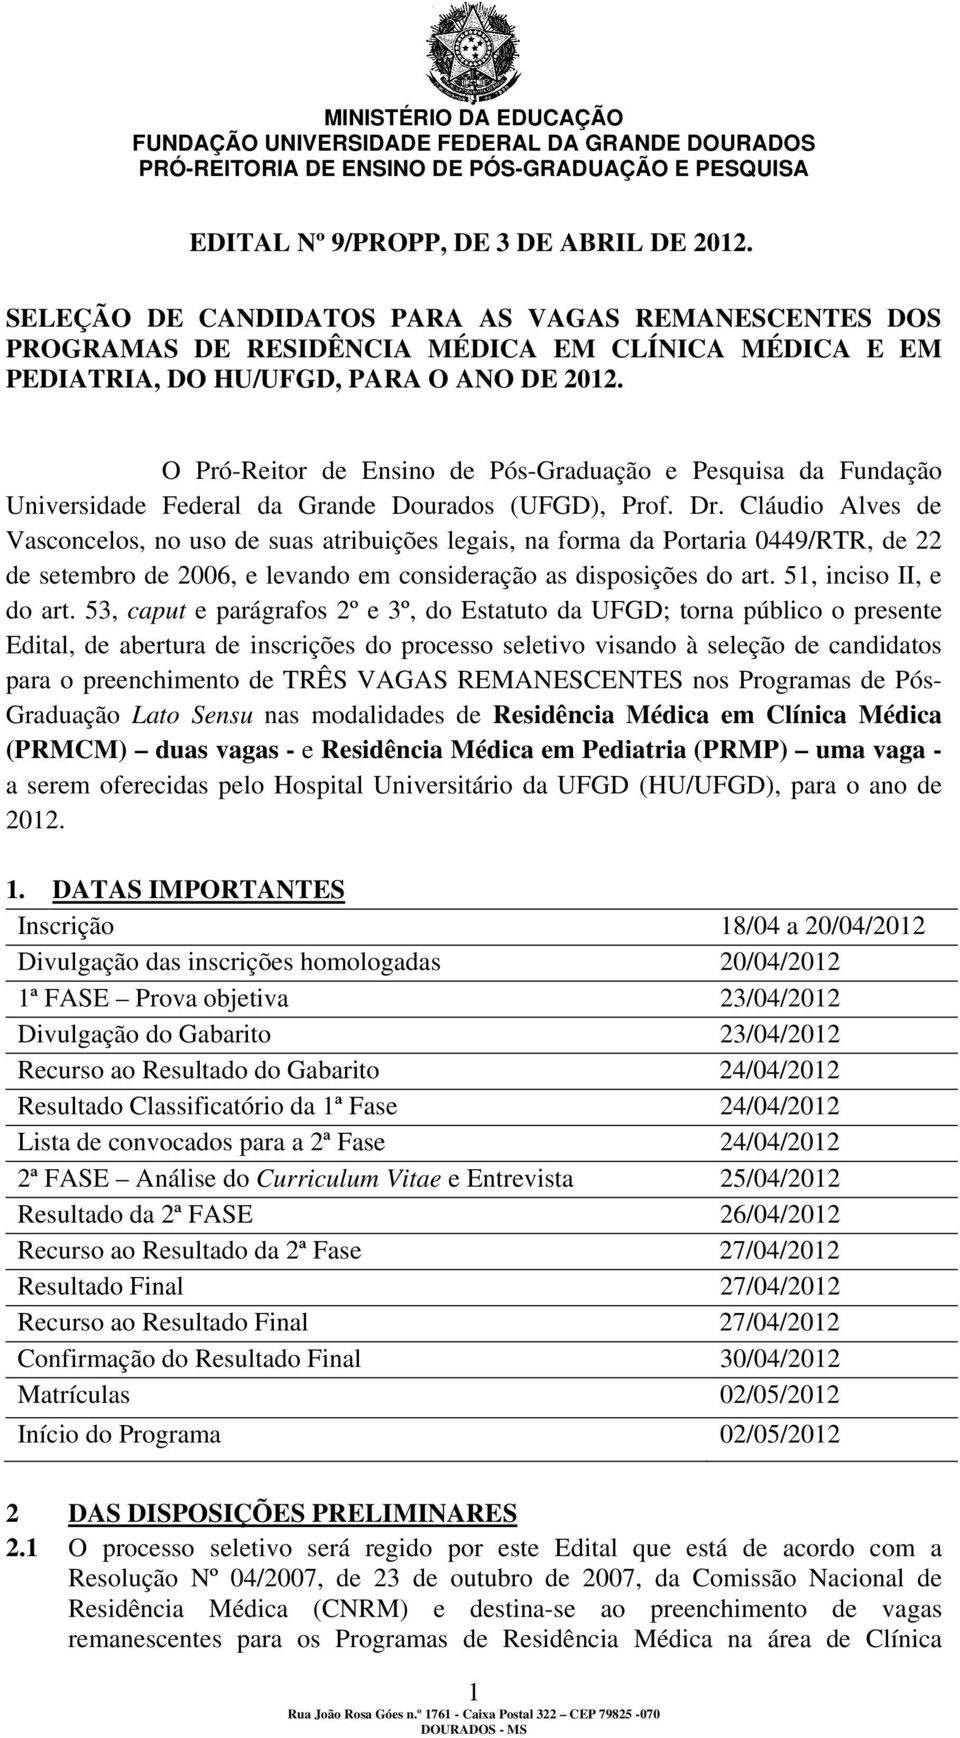 Cláudio Alves de Vasconcelos, no uso de suas atribuições legais, na forma da Portaria 0449/RTR, de 22 de setembro de 2006, e levando em consideração as disposições do art. 51, inciso II, e do art.